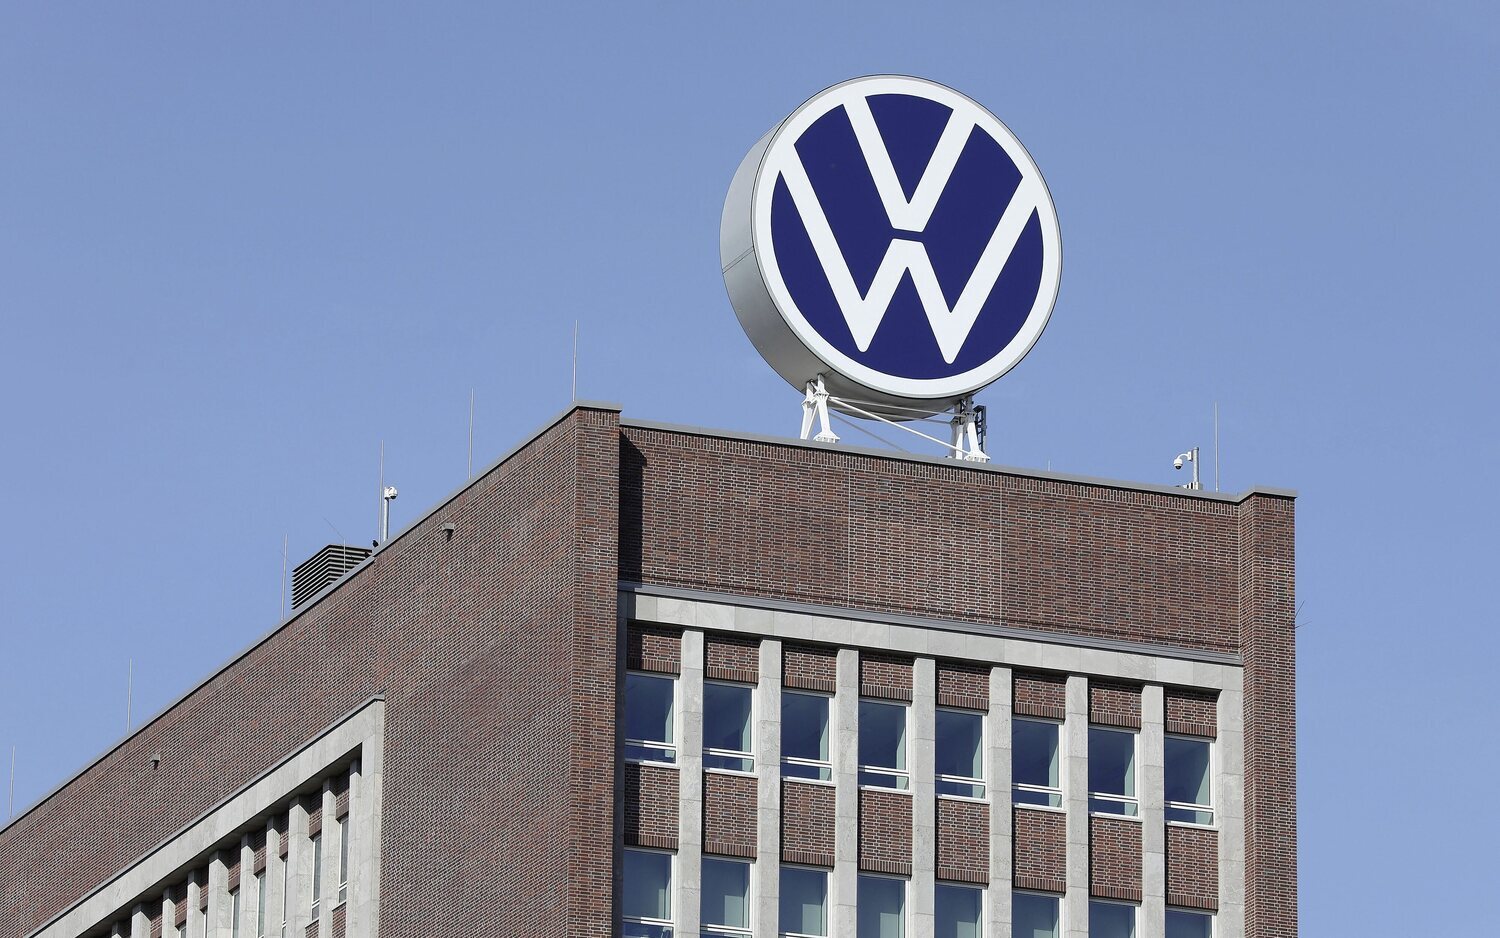 Volkswagen podría dar un paso atrás en el proyecto de Sagunto